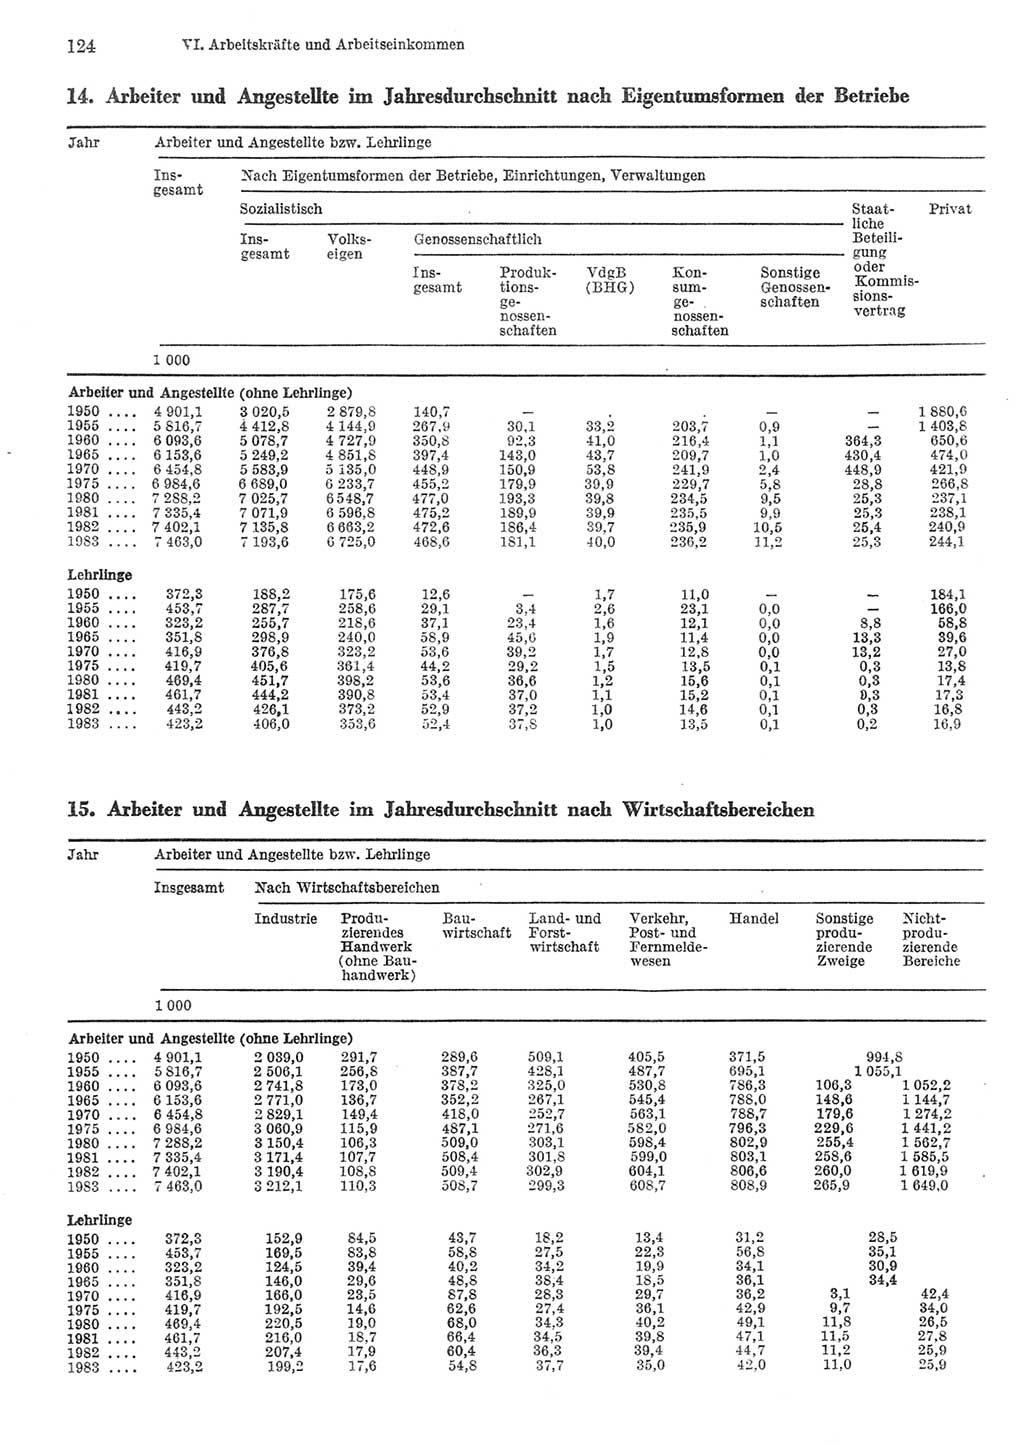 Statistisches Jahrbuch der Deutschen Demokratischen Republik (DDR) 1984, Seite 124 (Stat. Jb. DDR 1984, S. 124)